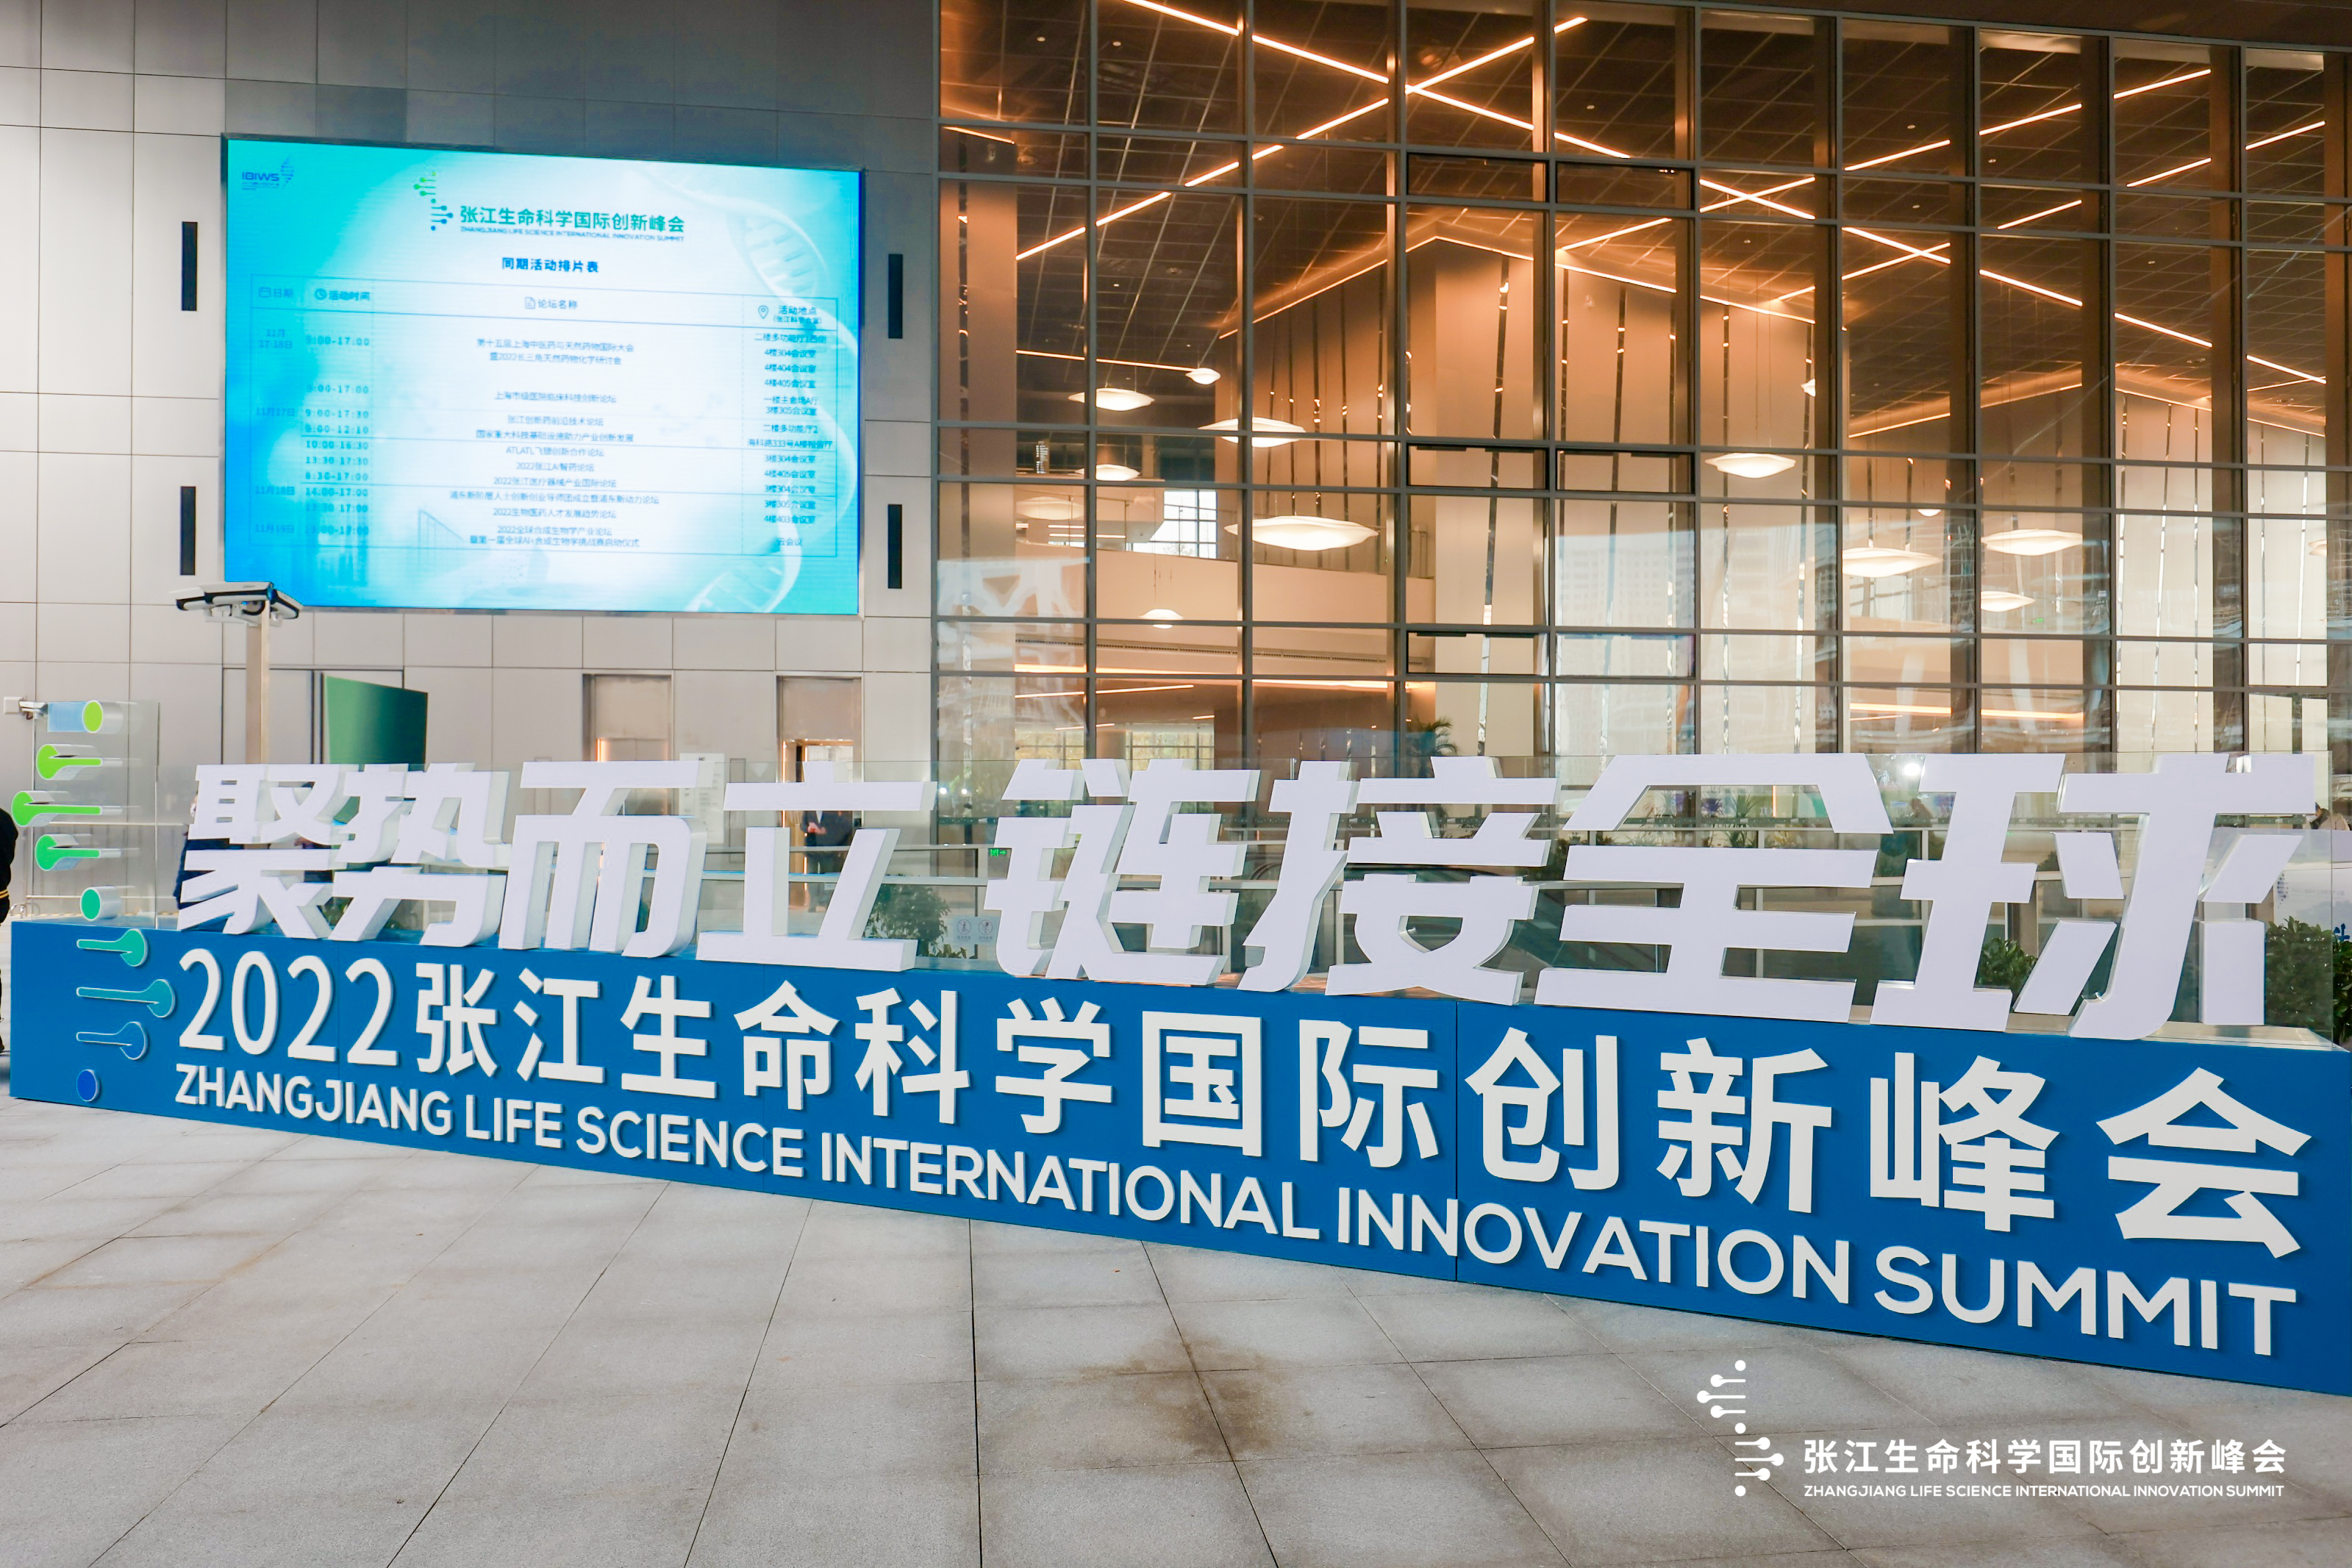 穿越行业周期寻找长期价值，张江引领生物医药产业创新浪潮